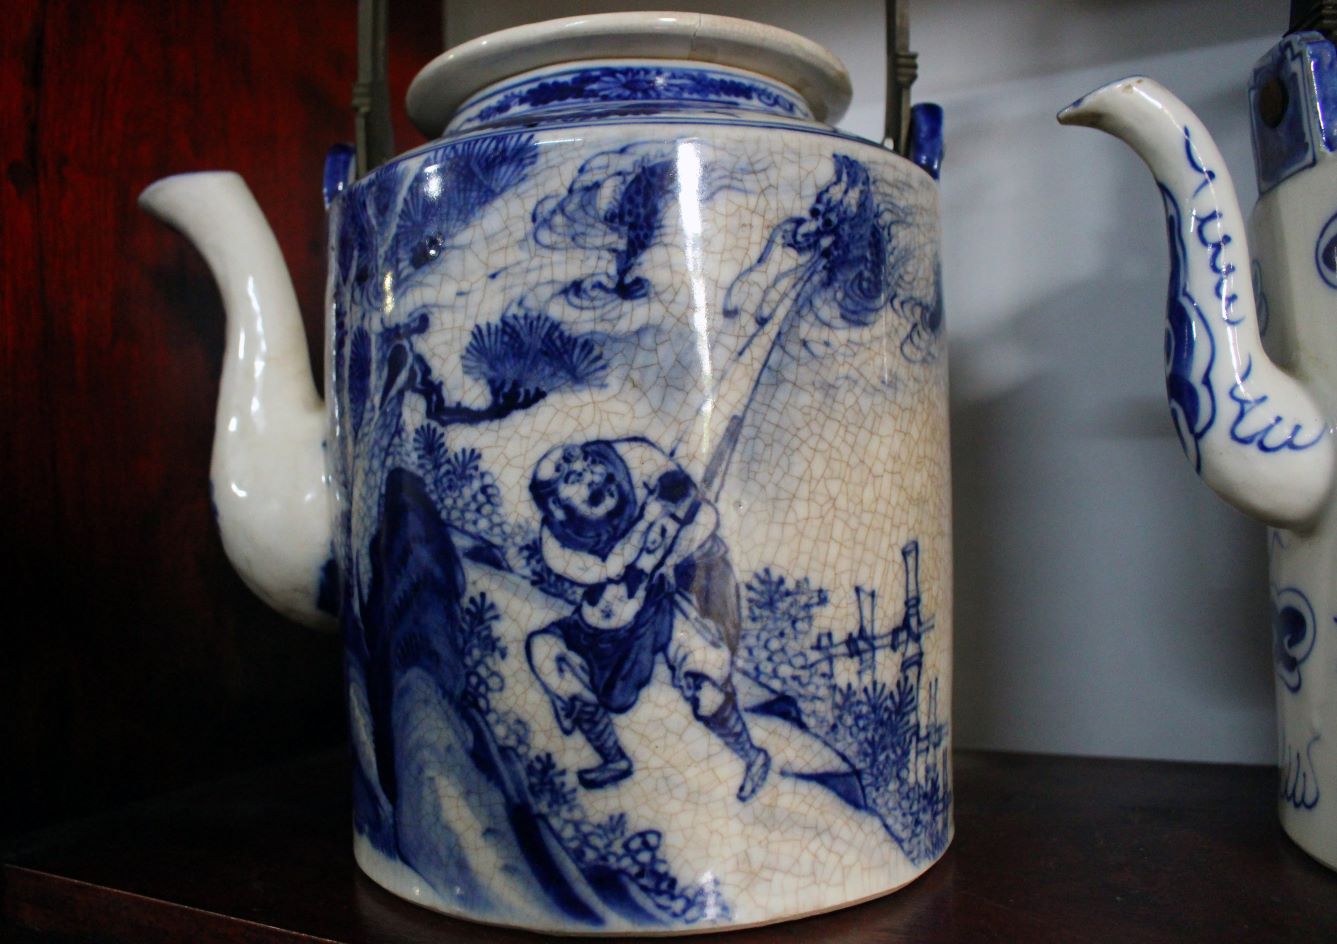 Chiếc ấm trà gốm Nam Bộ xưa vẽ hình ảnh La hán hàng long. Ảnh: Lâm Điền